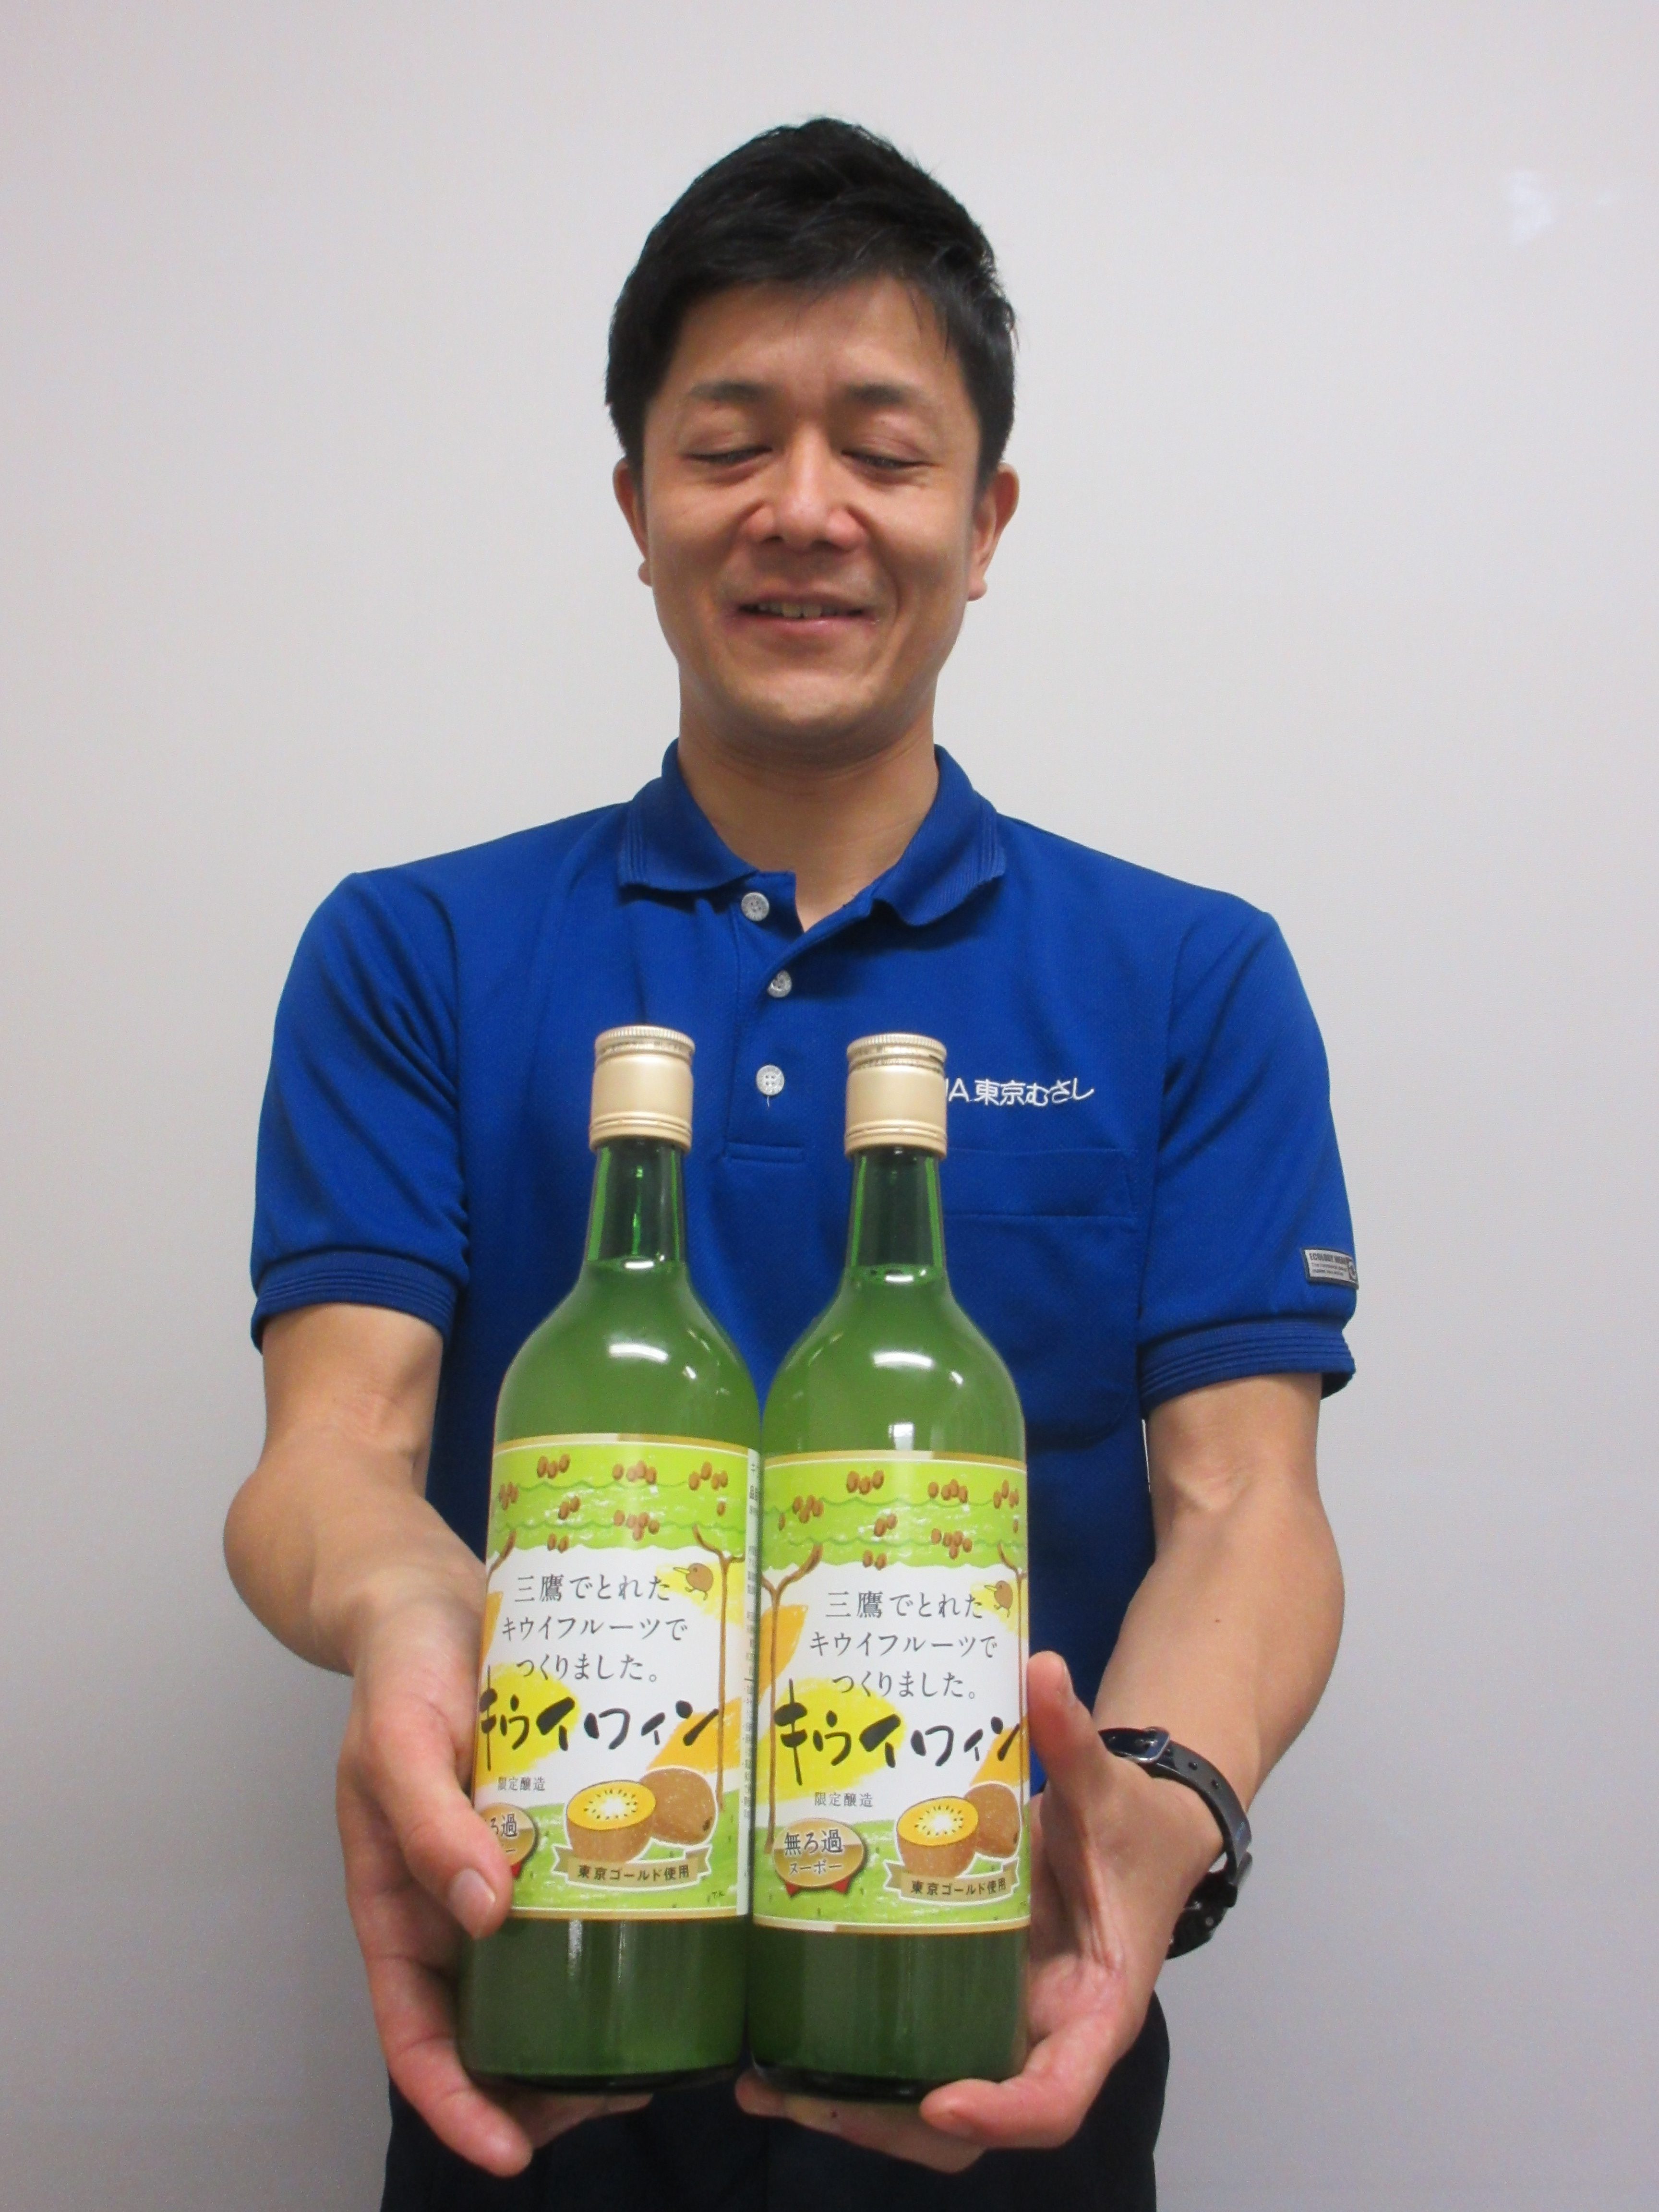 東京むさし・０３１５・三鷹市で３０年以上続く特産品キウイワインを東京ゴールドを使ってリニューアル